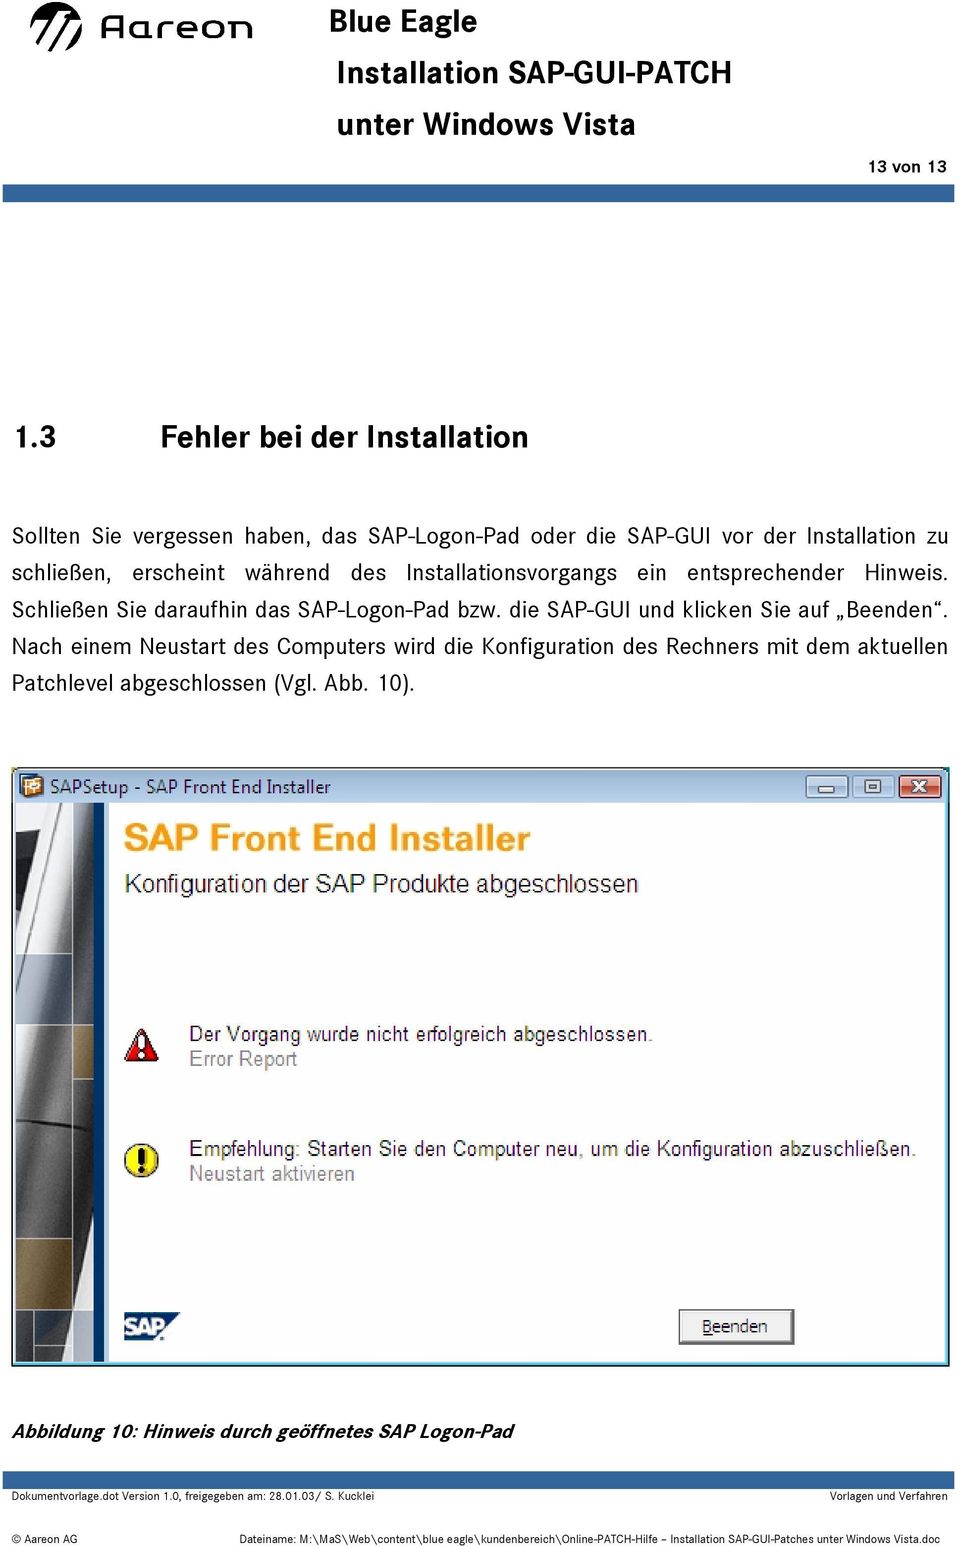 des Installationsvorgangs ein entsprechender Hinweis. Schließen Sie daraufhin das SAP-Logon-Pad bzw. die SAP-GUI und klicken Sie auf Beenden.